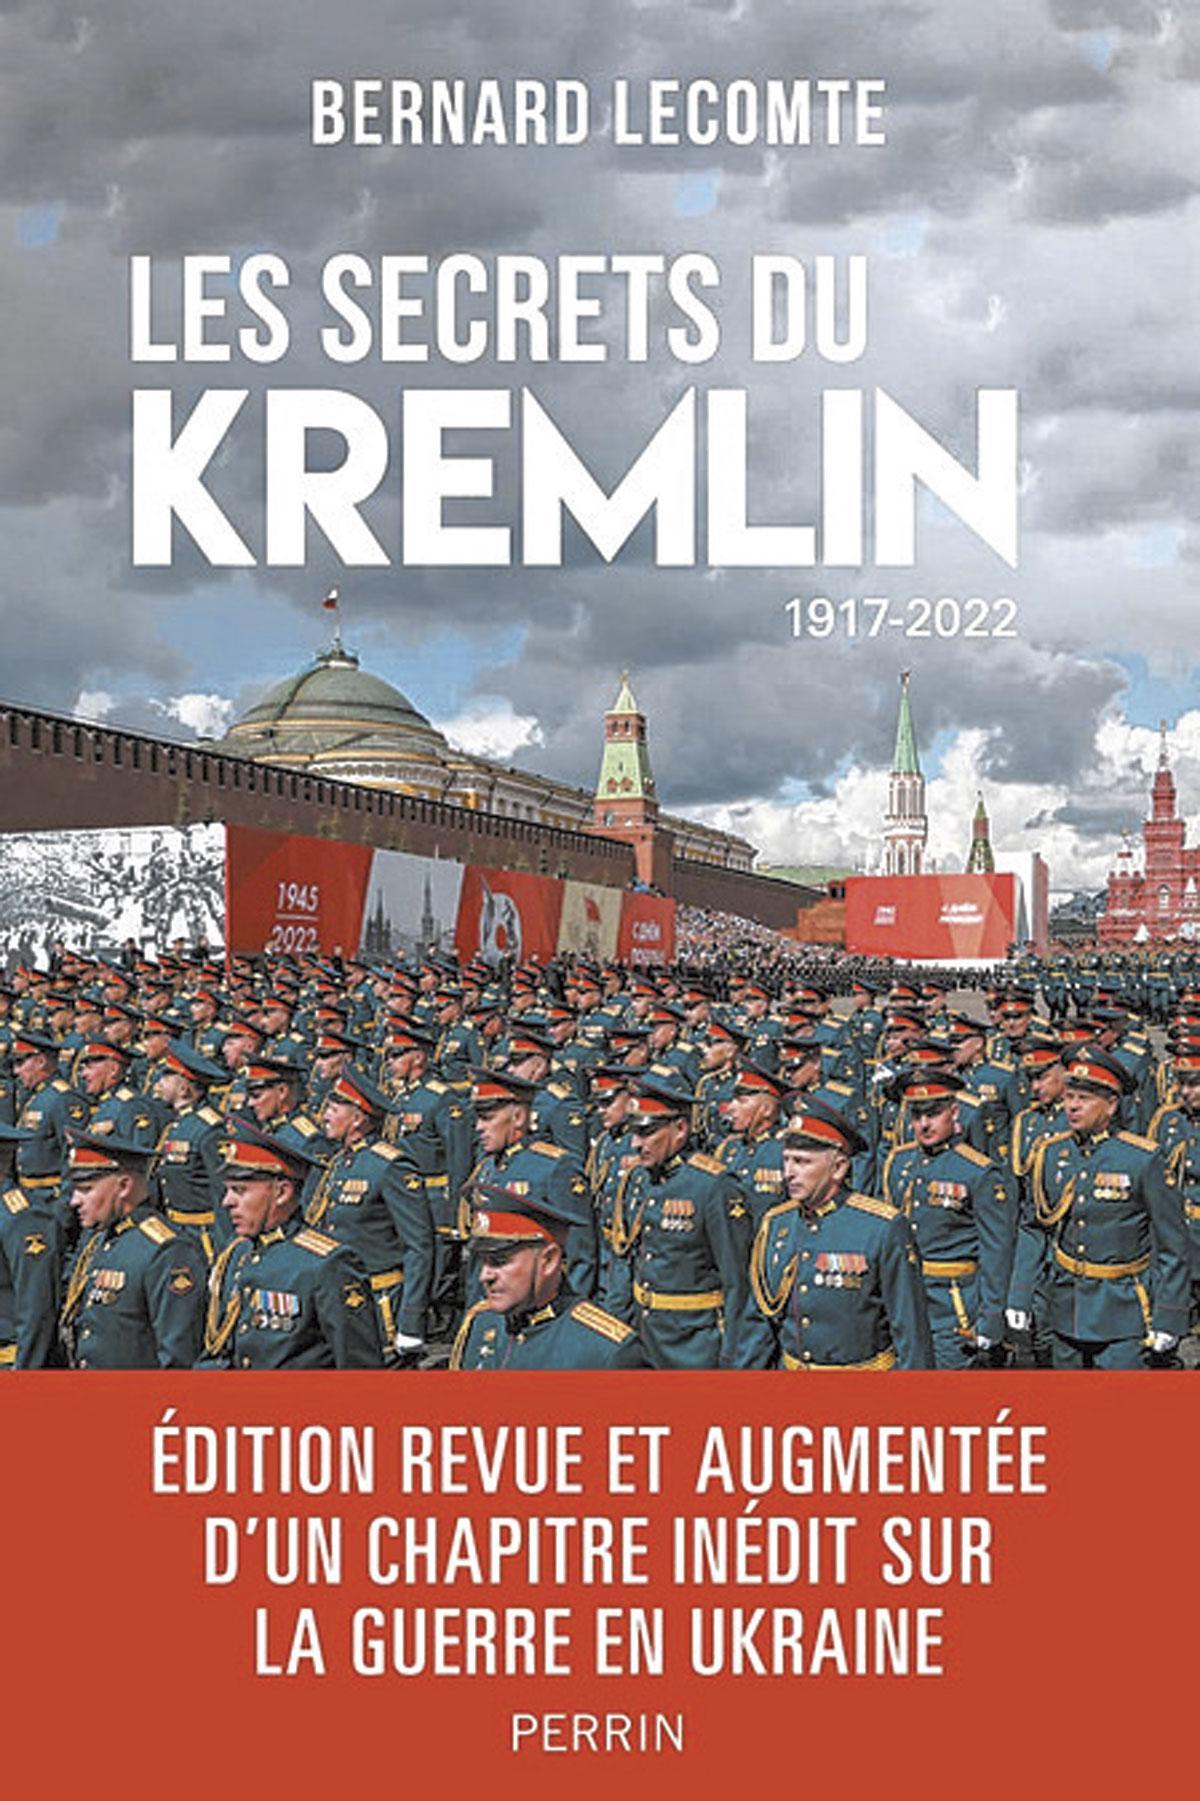 (1) Les Secrets du Kremlin 1917‑2022 (édition revue et enrichie), par Bernard Lecomte, Perrin, 407 p.